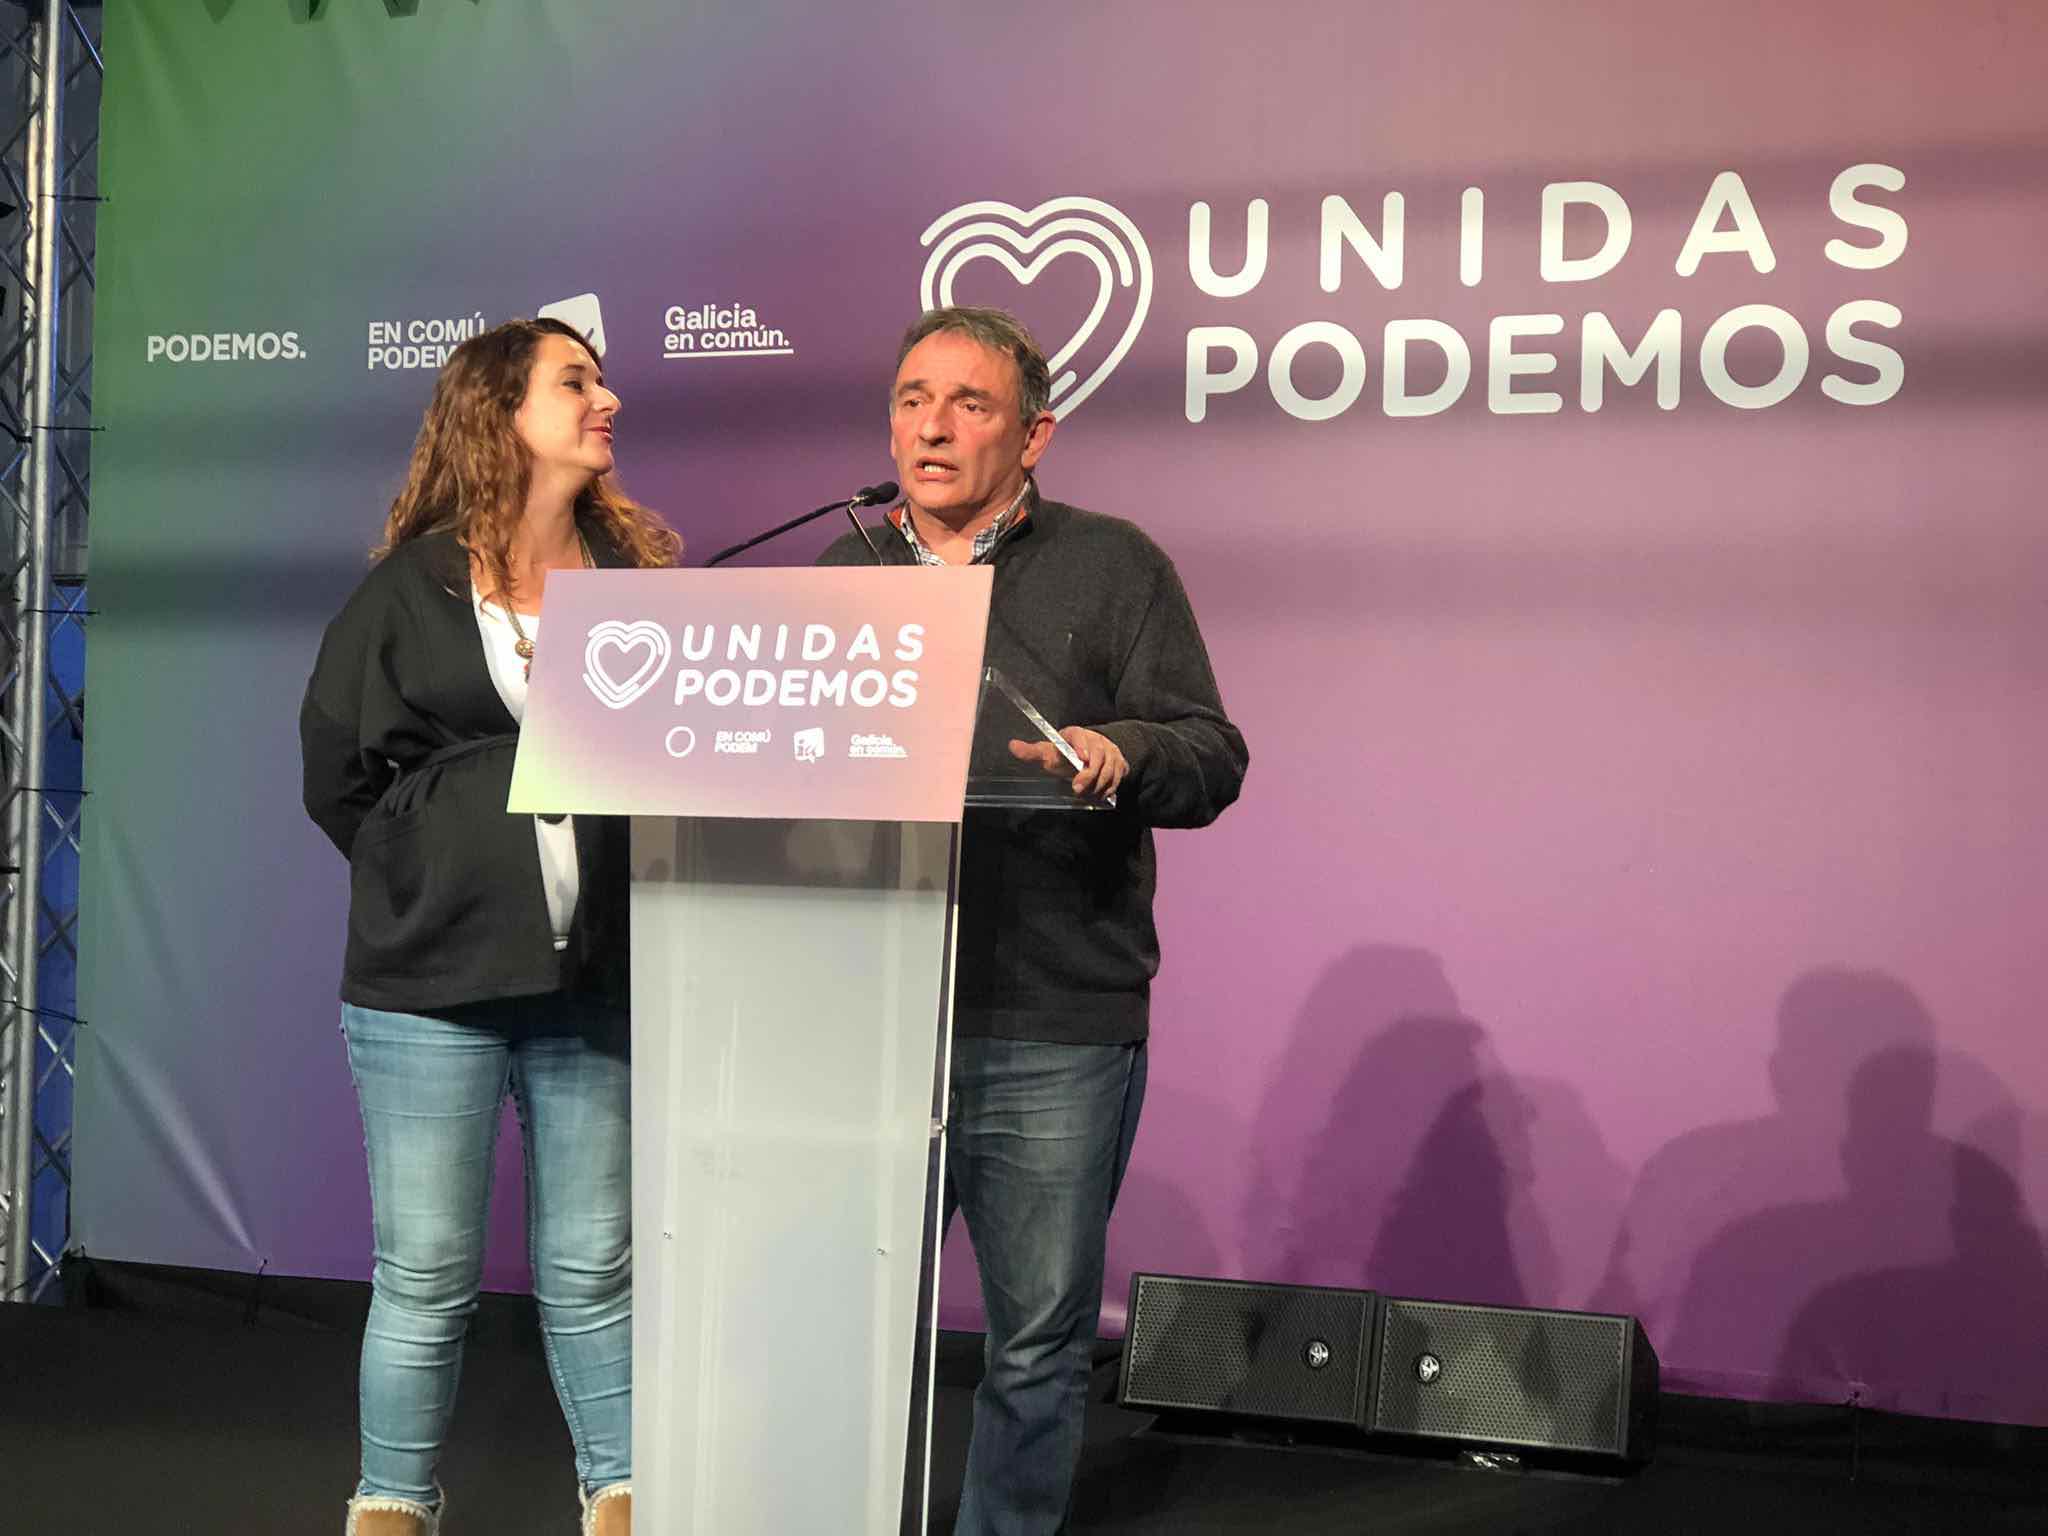 Enrique Santiago enchufa a sus fieles en las instituciones y se convierte en jefe en la sombra de Podemos